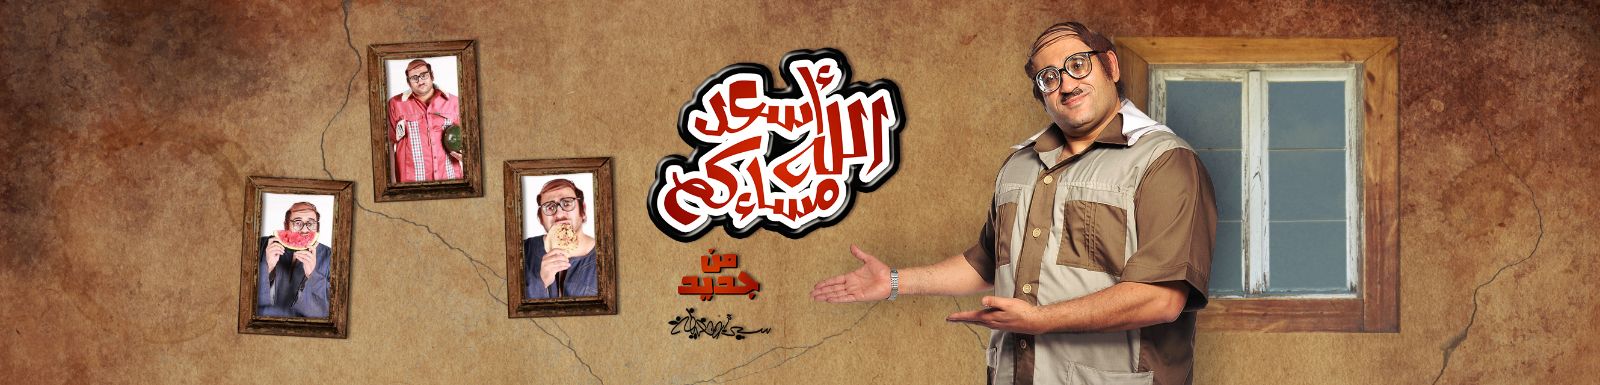 مشاهدة برنامج أسعد الله مسائكم الحلقة 5 الخامسة اليوم الخميس 29-5-2014